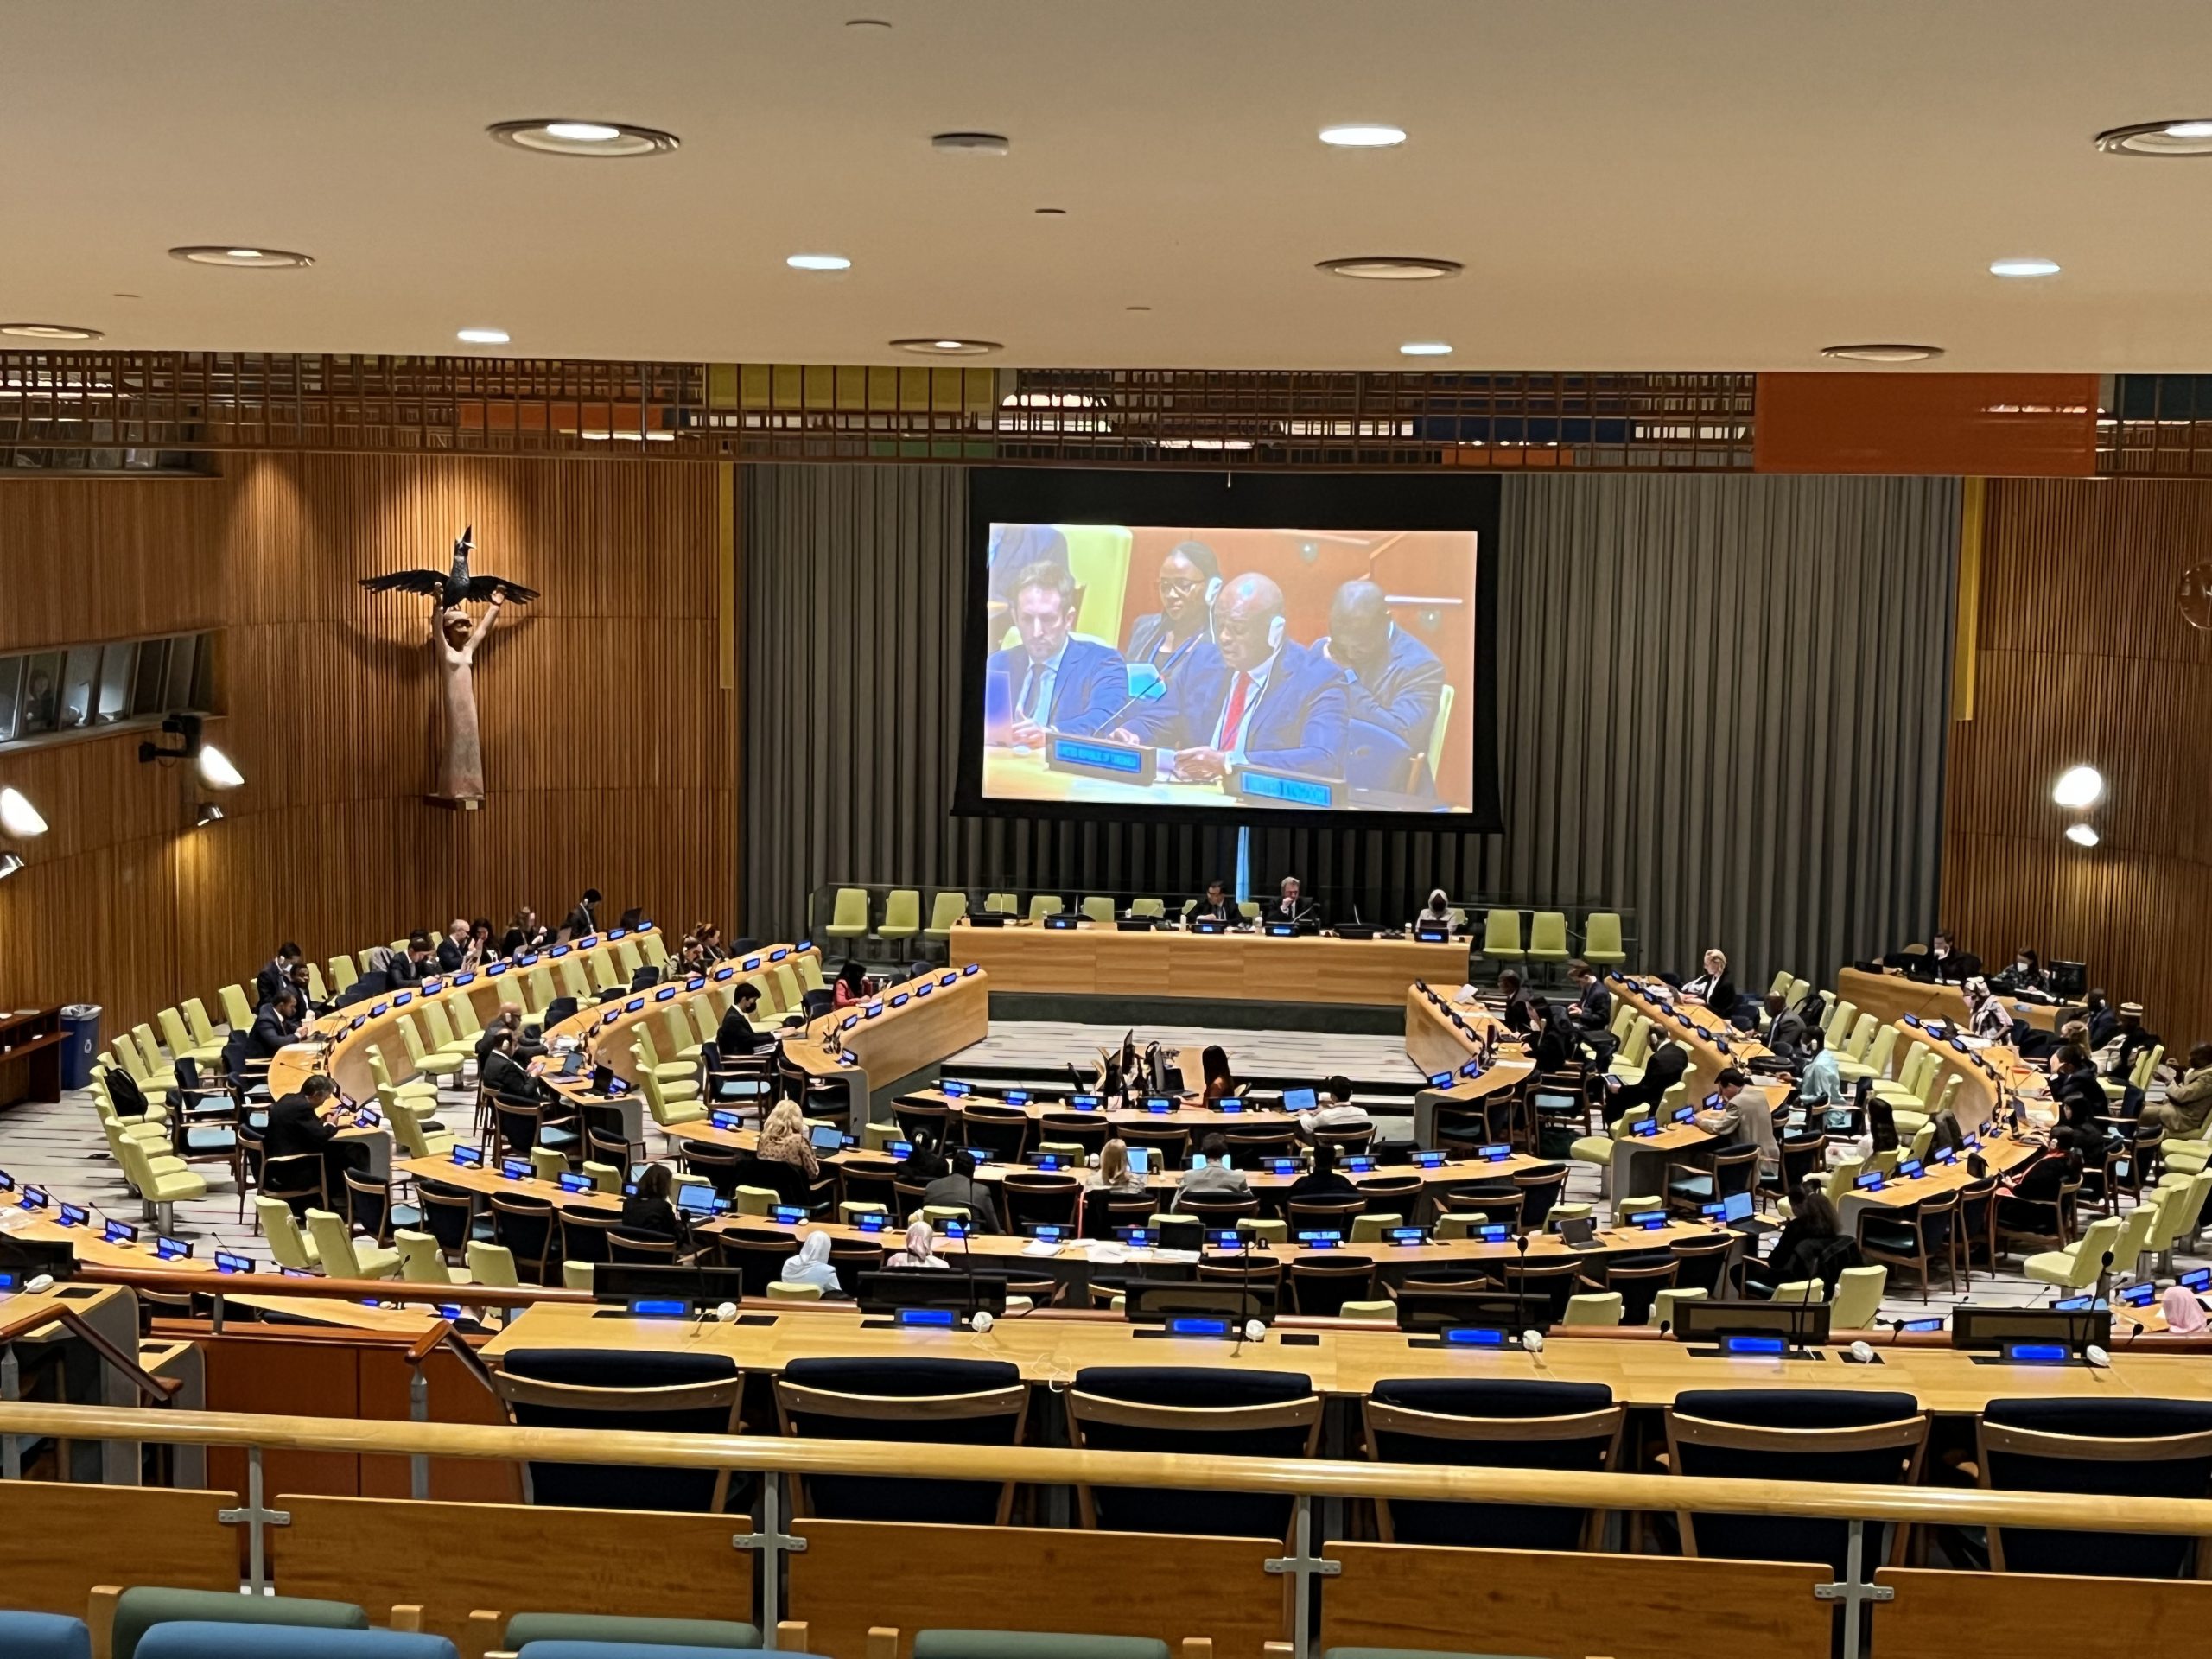 UN Trusteeship Council in session